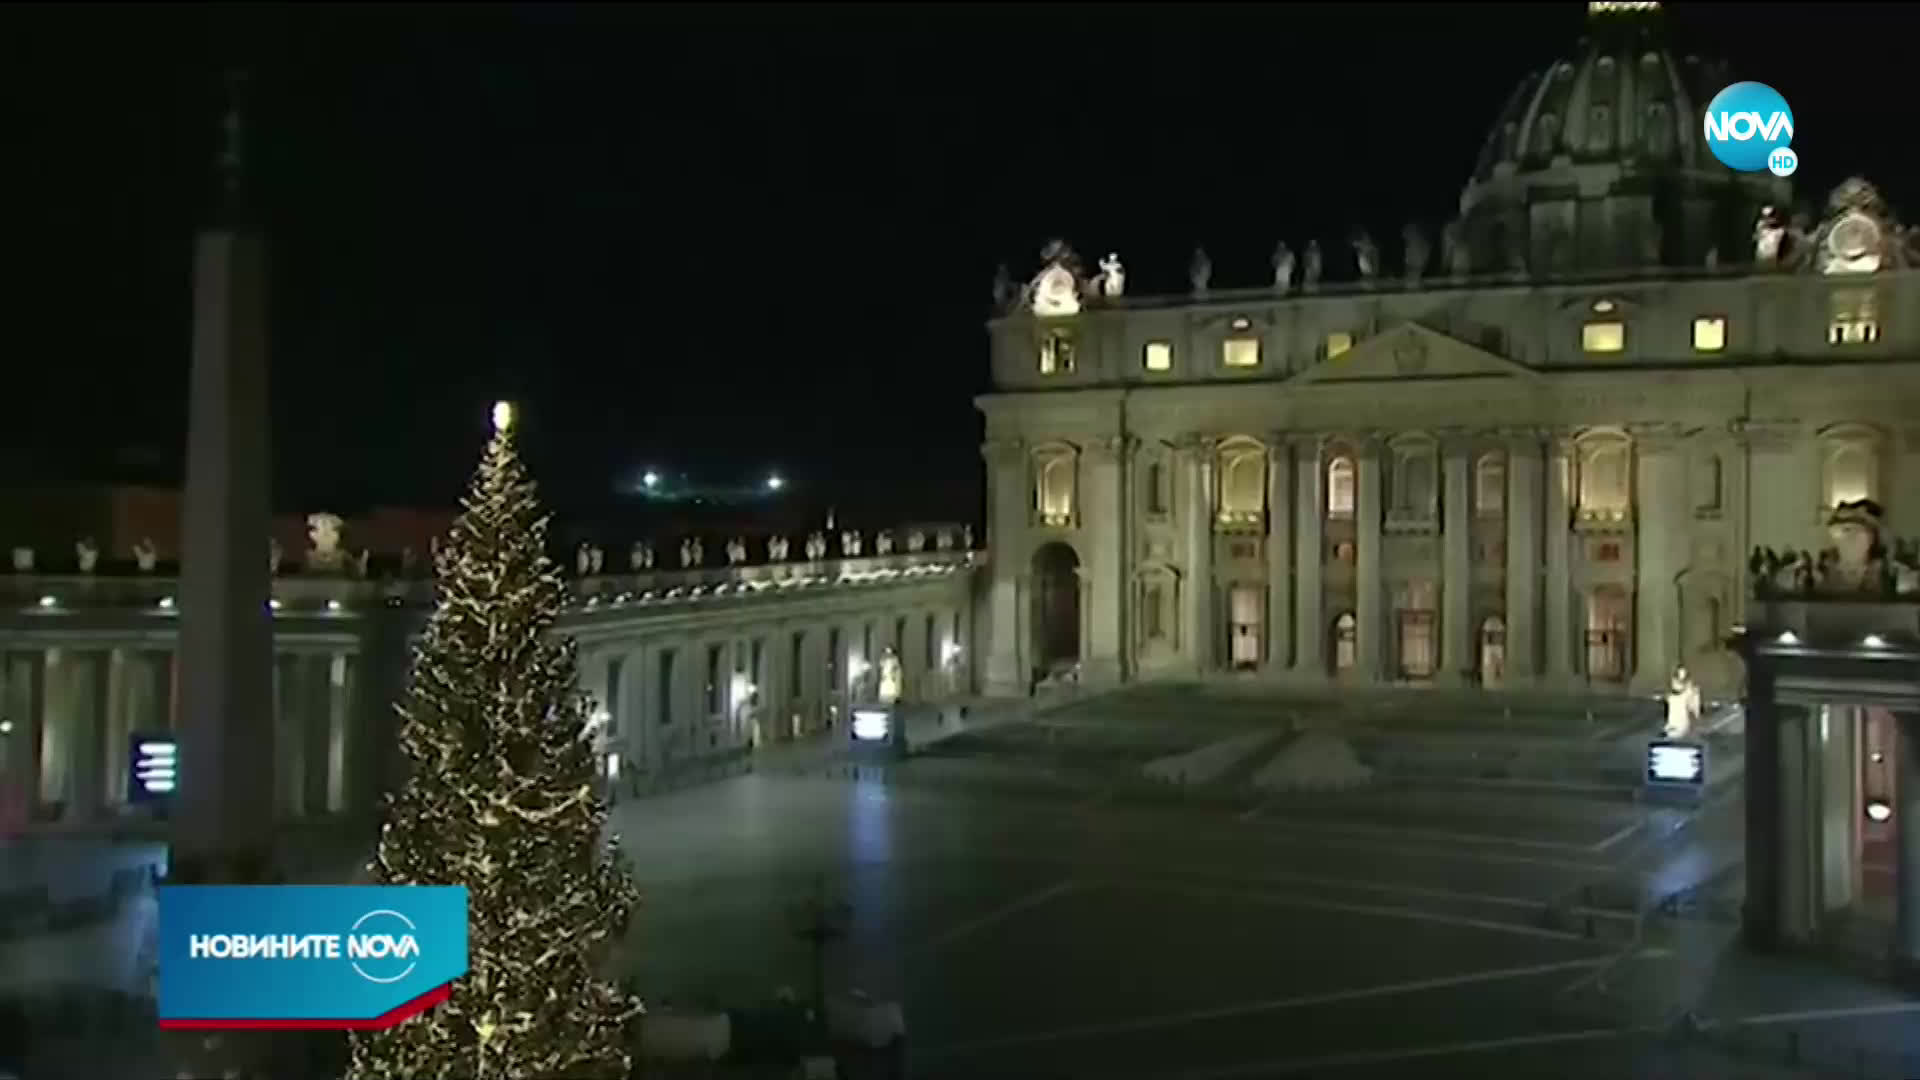 В УСЛОВИЯ НА COVID-19: Запалиха светлините на коледното дърво във Ватикана